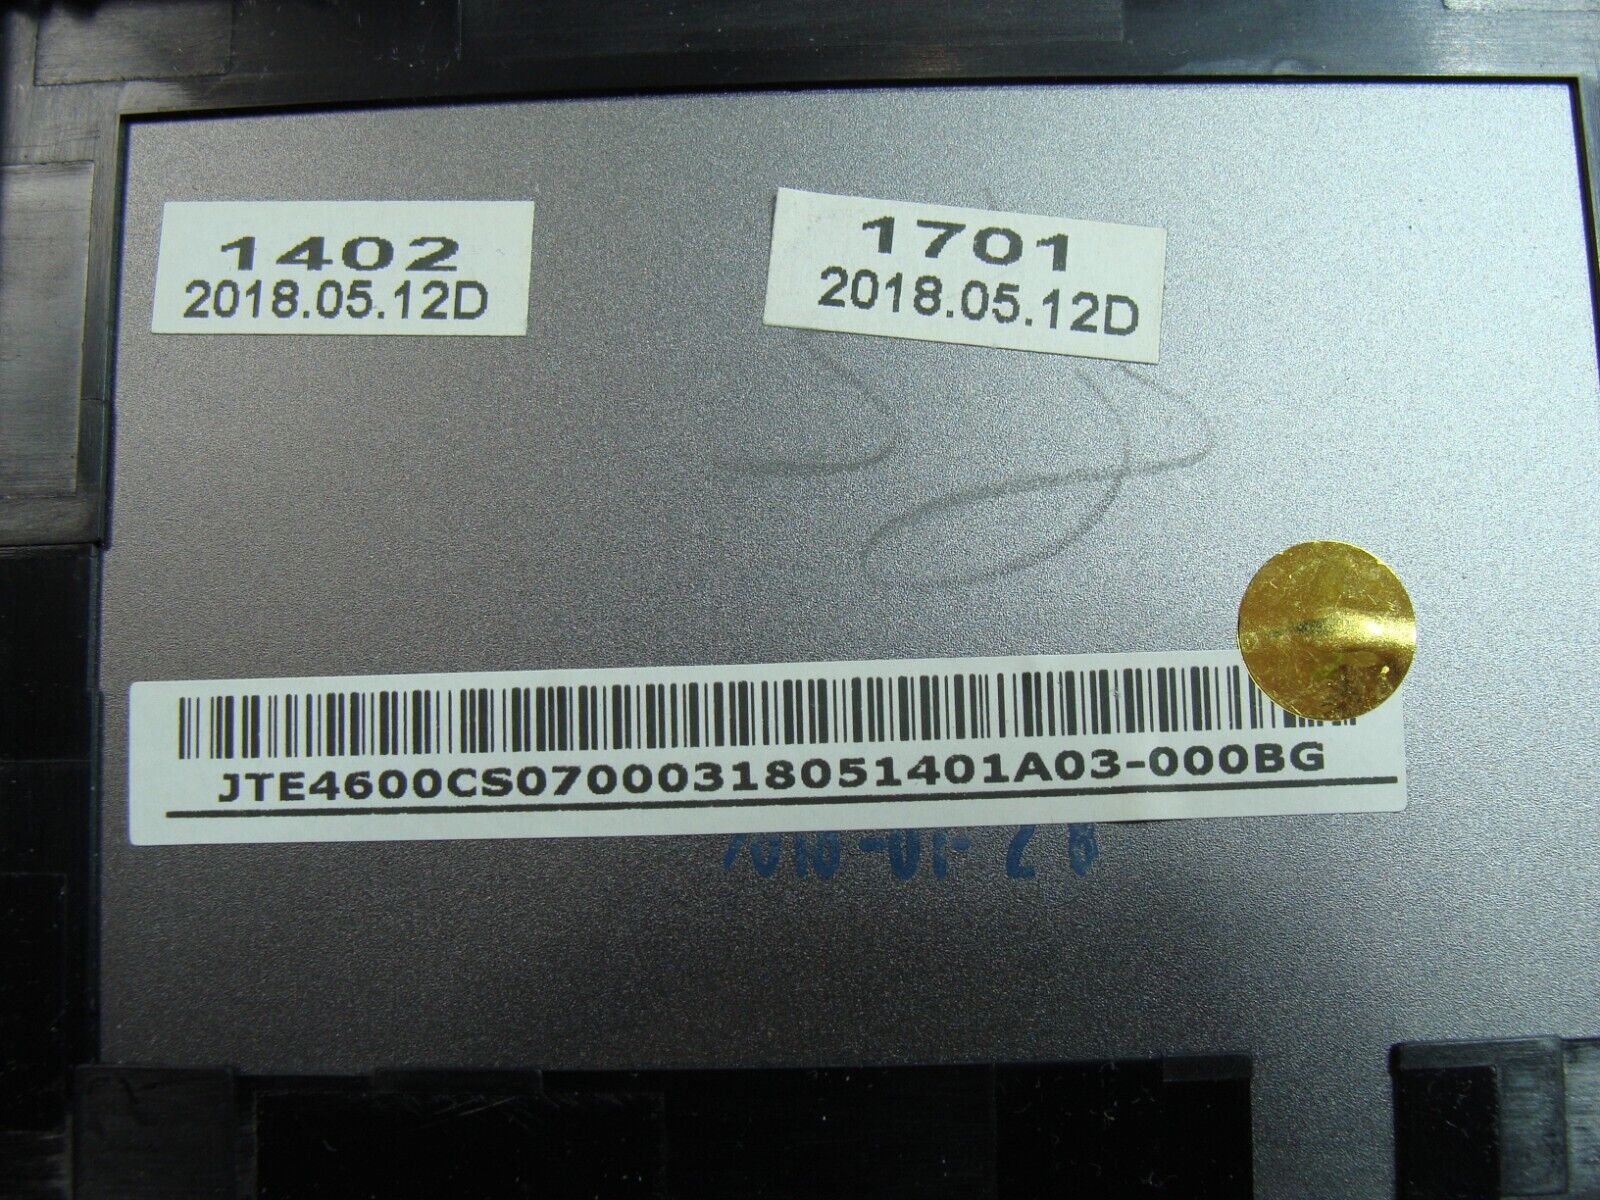 Acer Spin SP515-51N-59EE 15.6